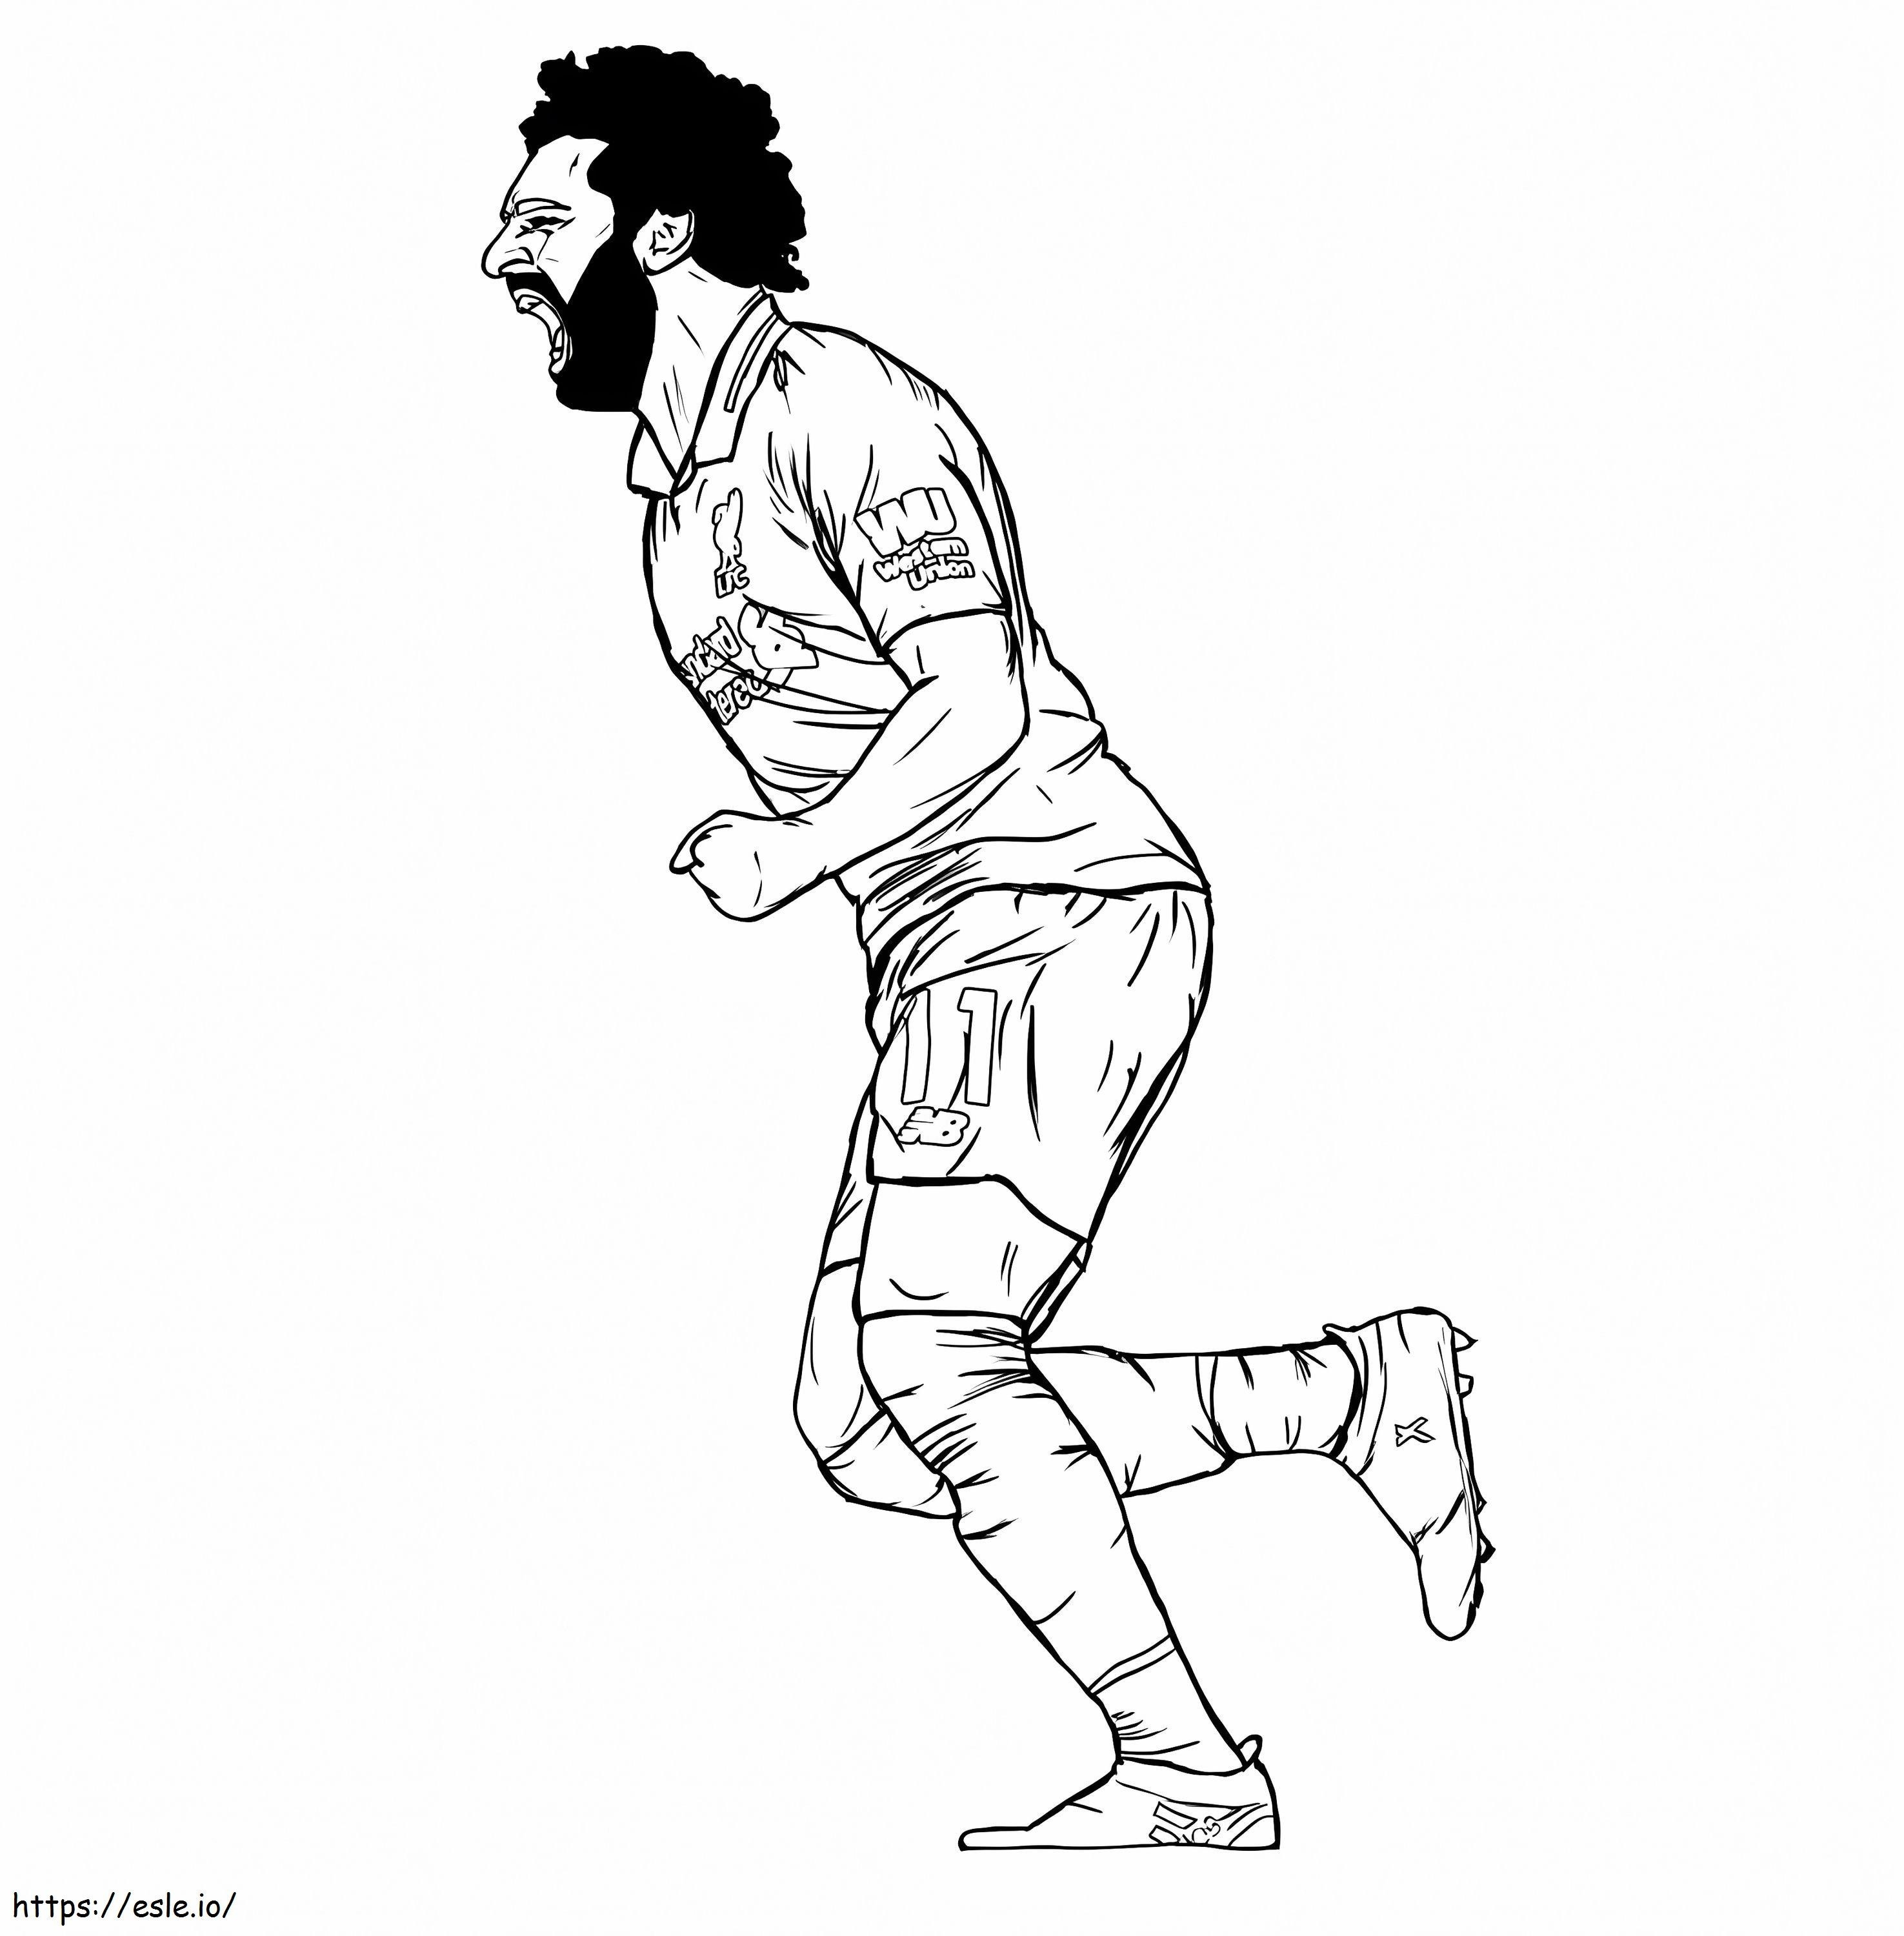 Mohamed Salah 7 ausmalbilder